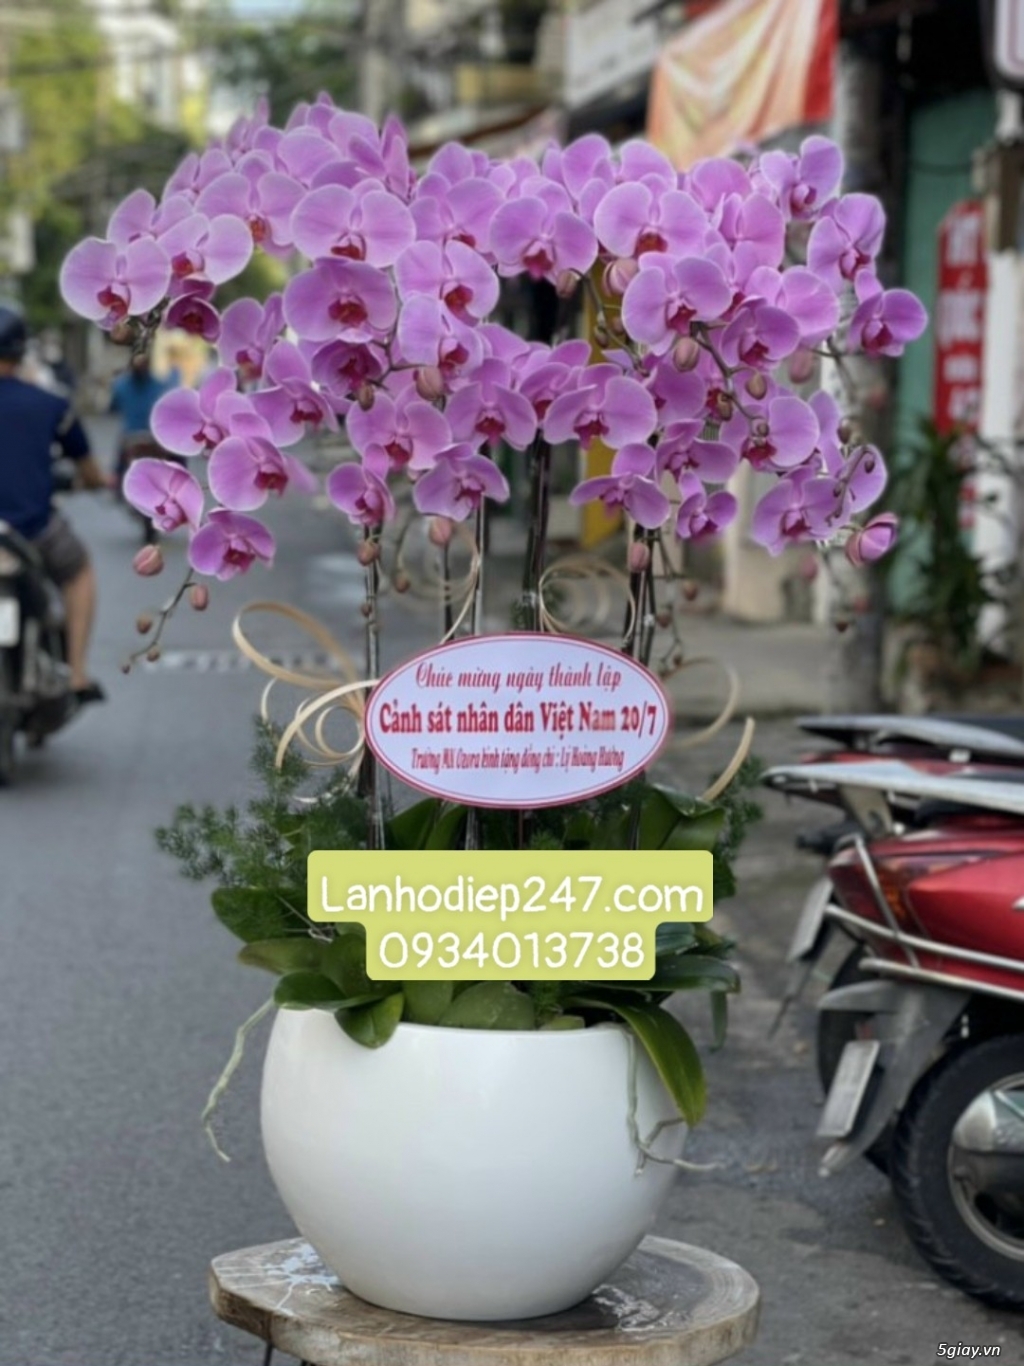 Shop hoa tươi tphcm chuyên bán lan hồ điệp đẹp cao cấp nhất sài gòn - 14